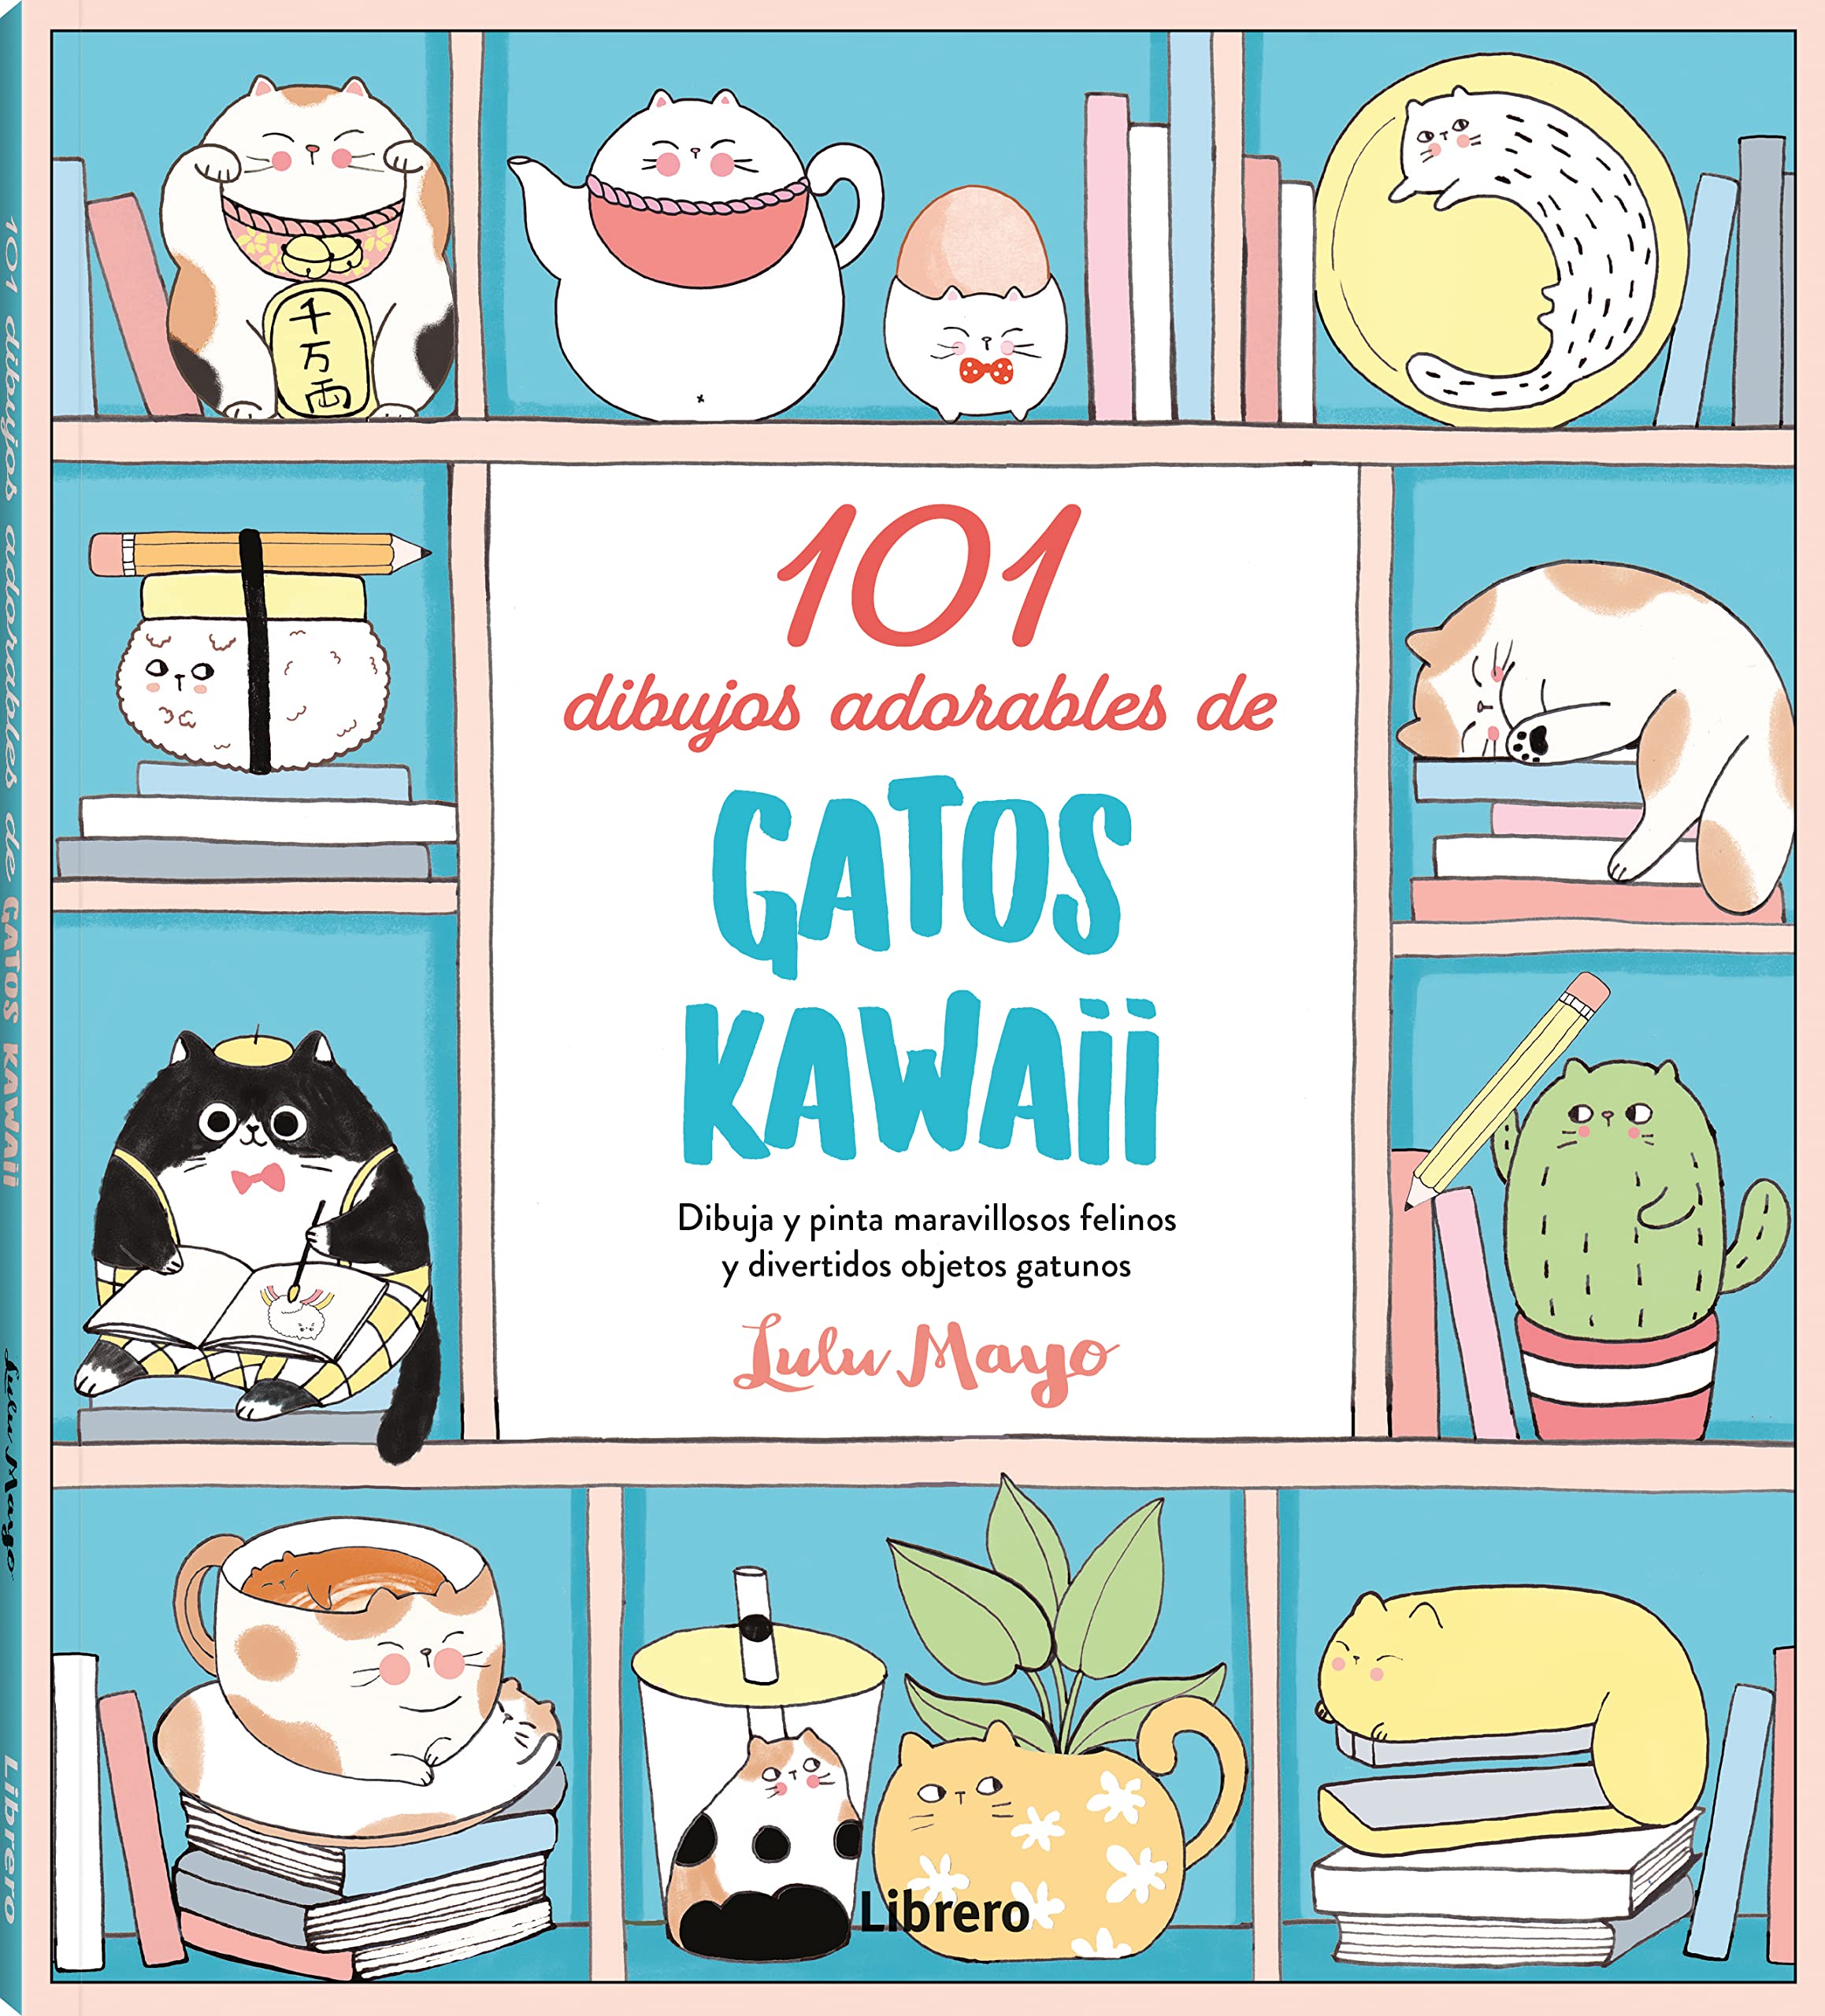 101 dessins adorables de chats Kawaii